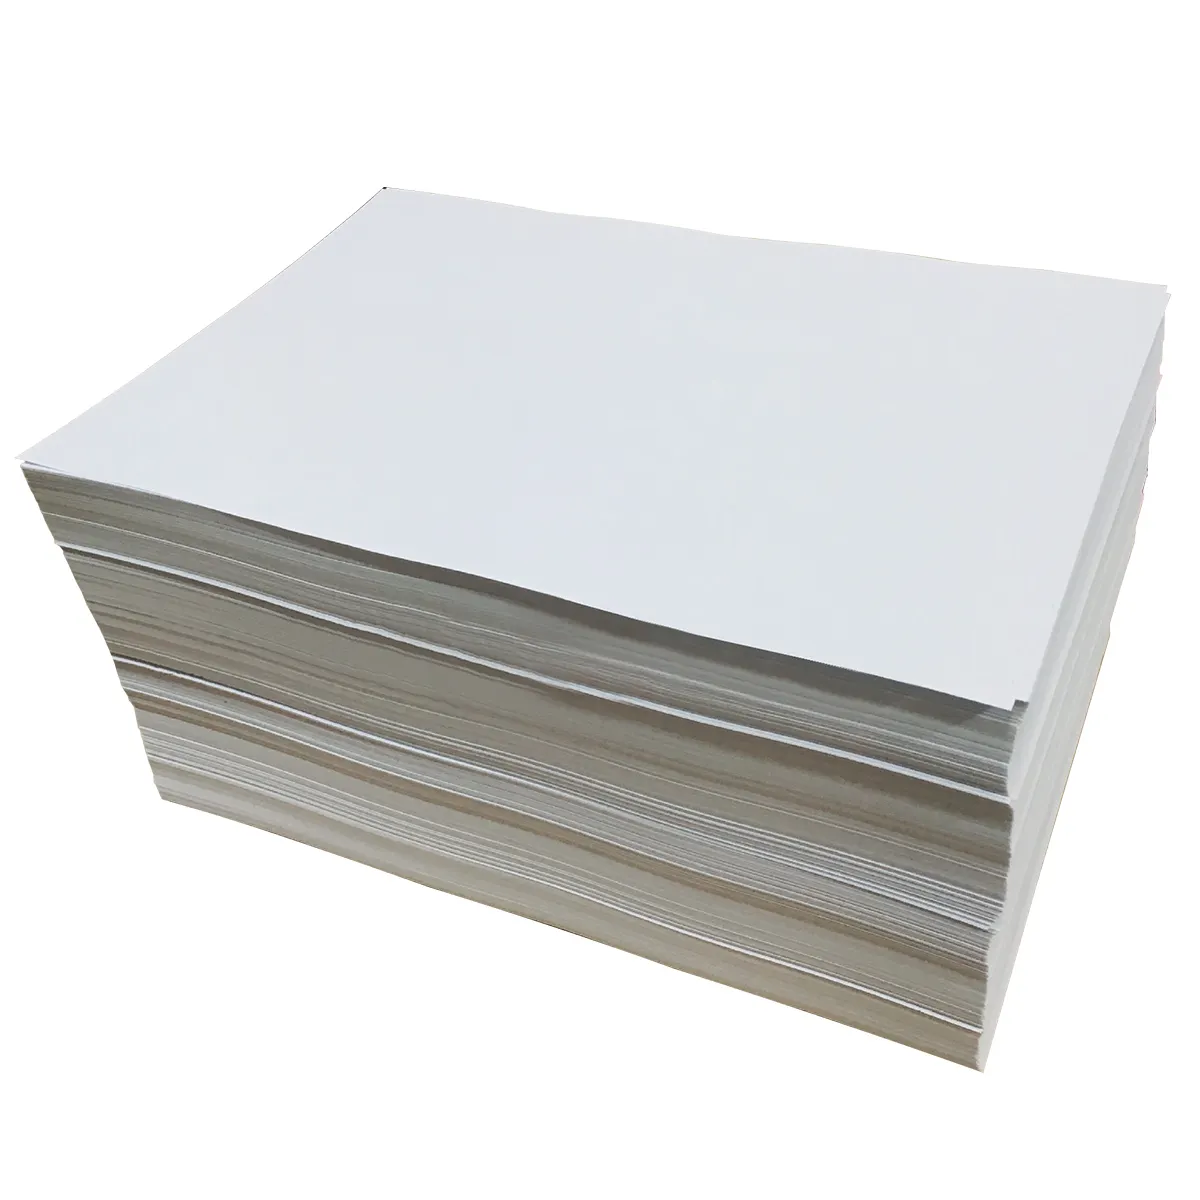 Fabrik preis Papier blatt weiß Trenn papier Silikon beschichtetes Trenn papier